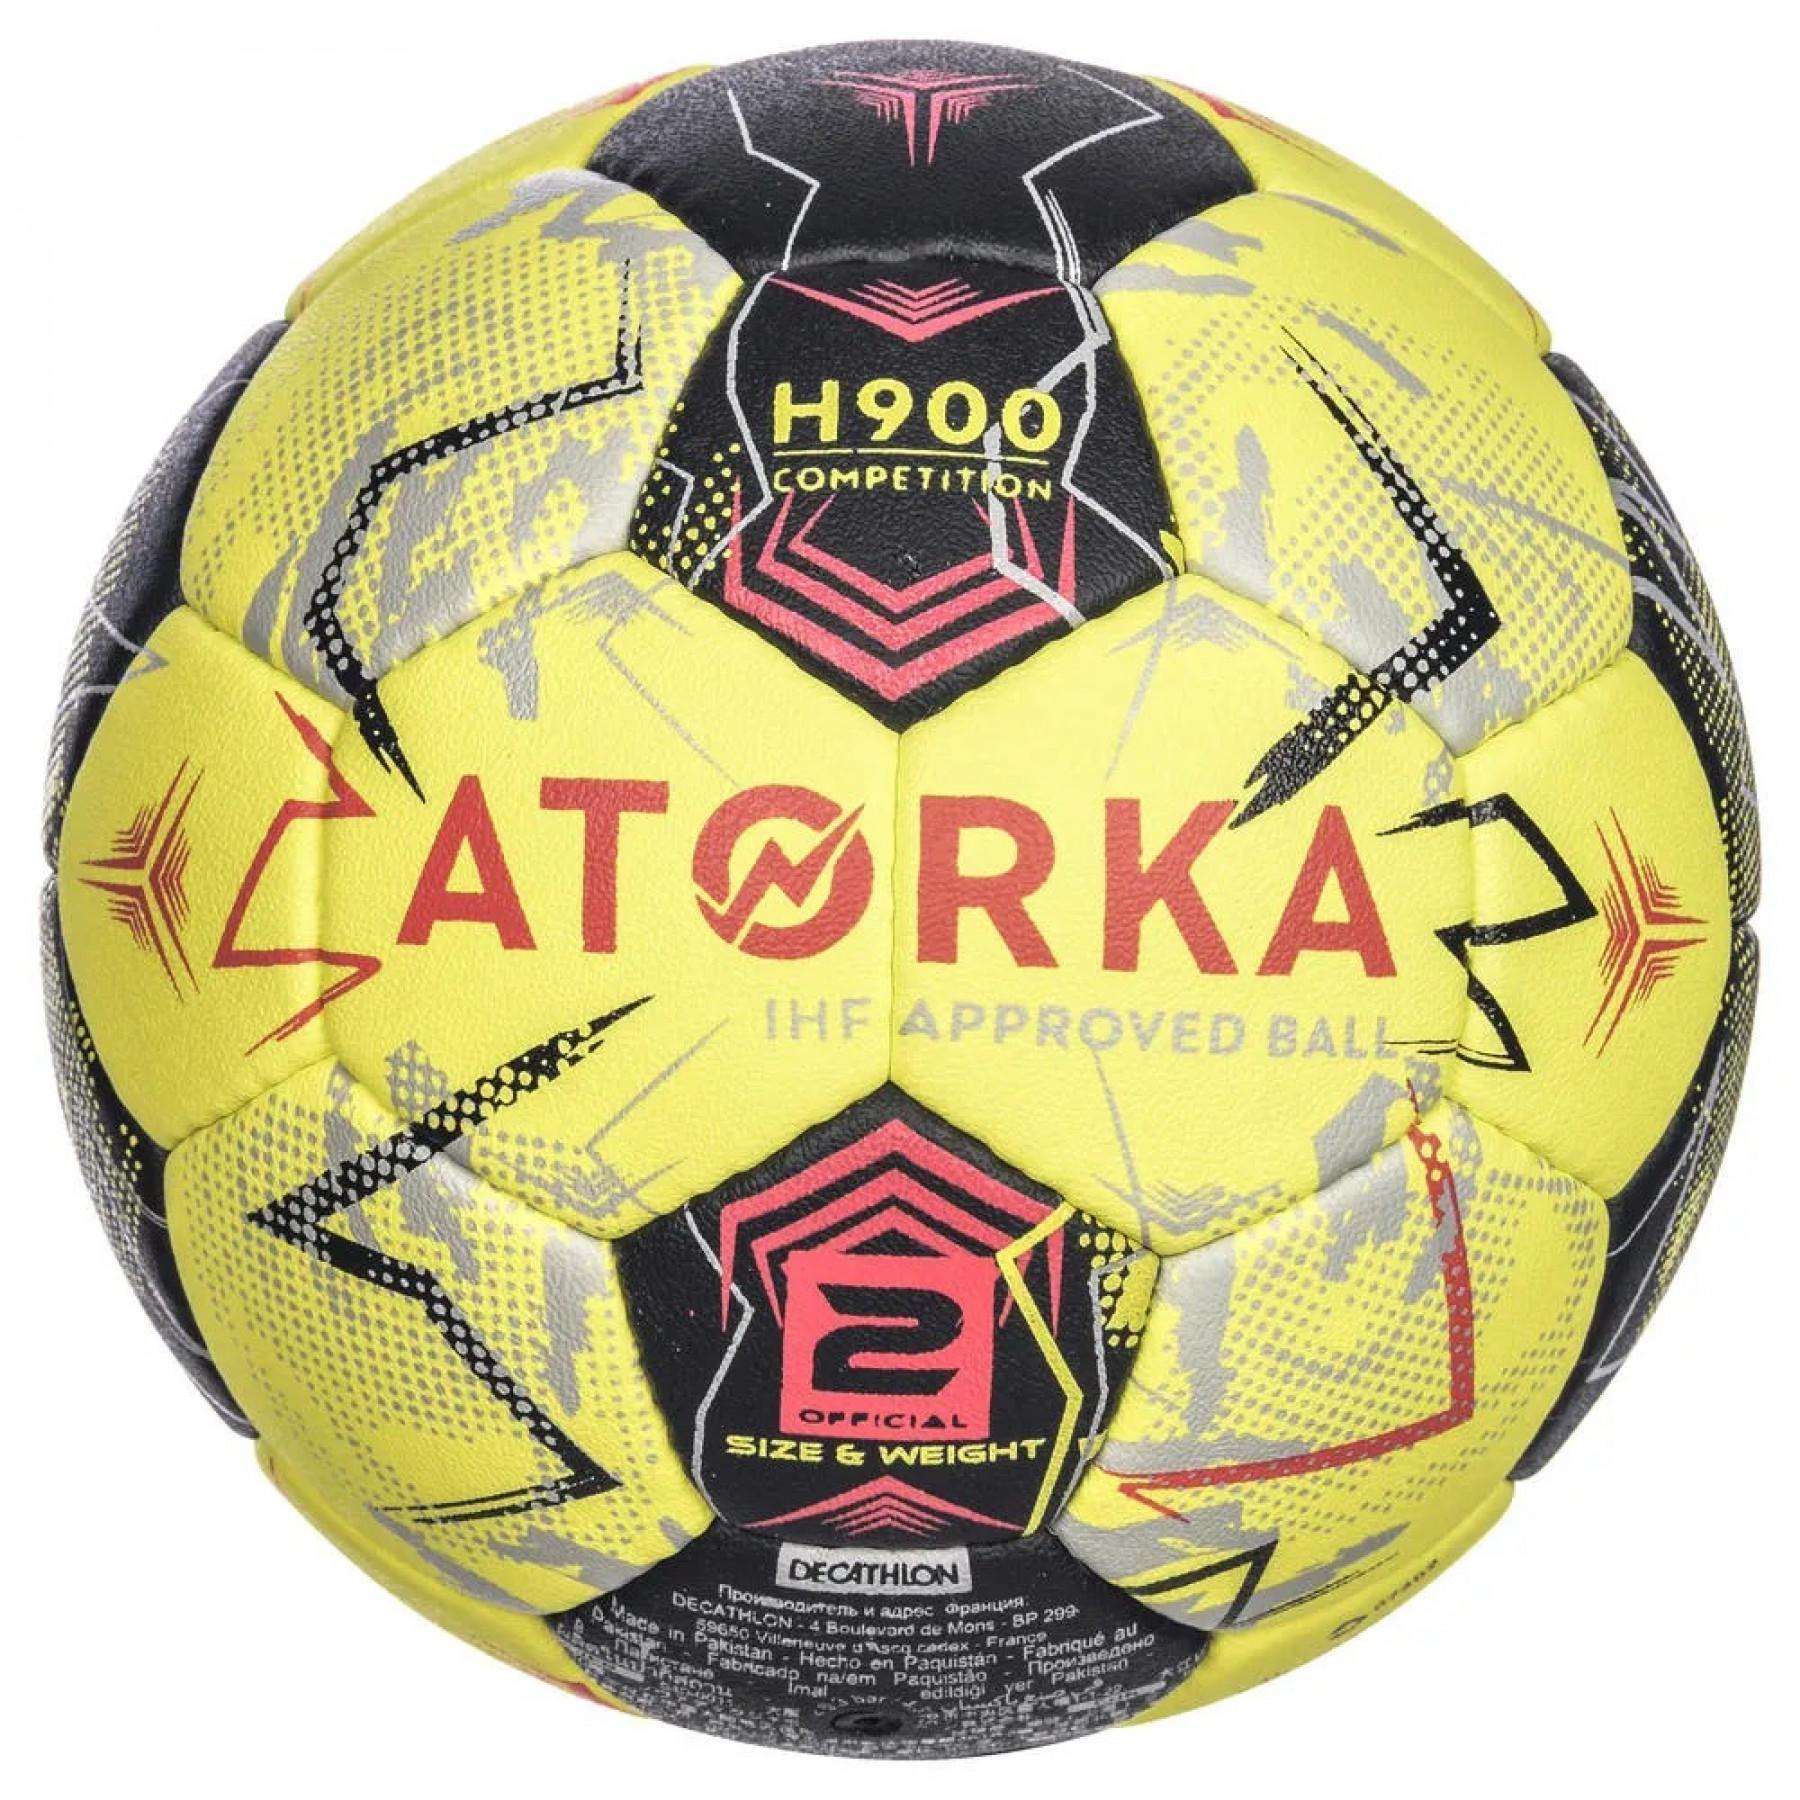 Pallone Atorka H900 IHF - misura 2